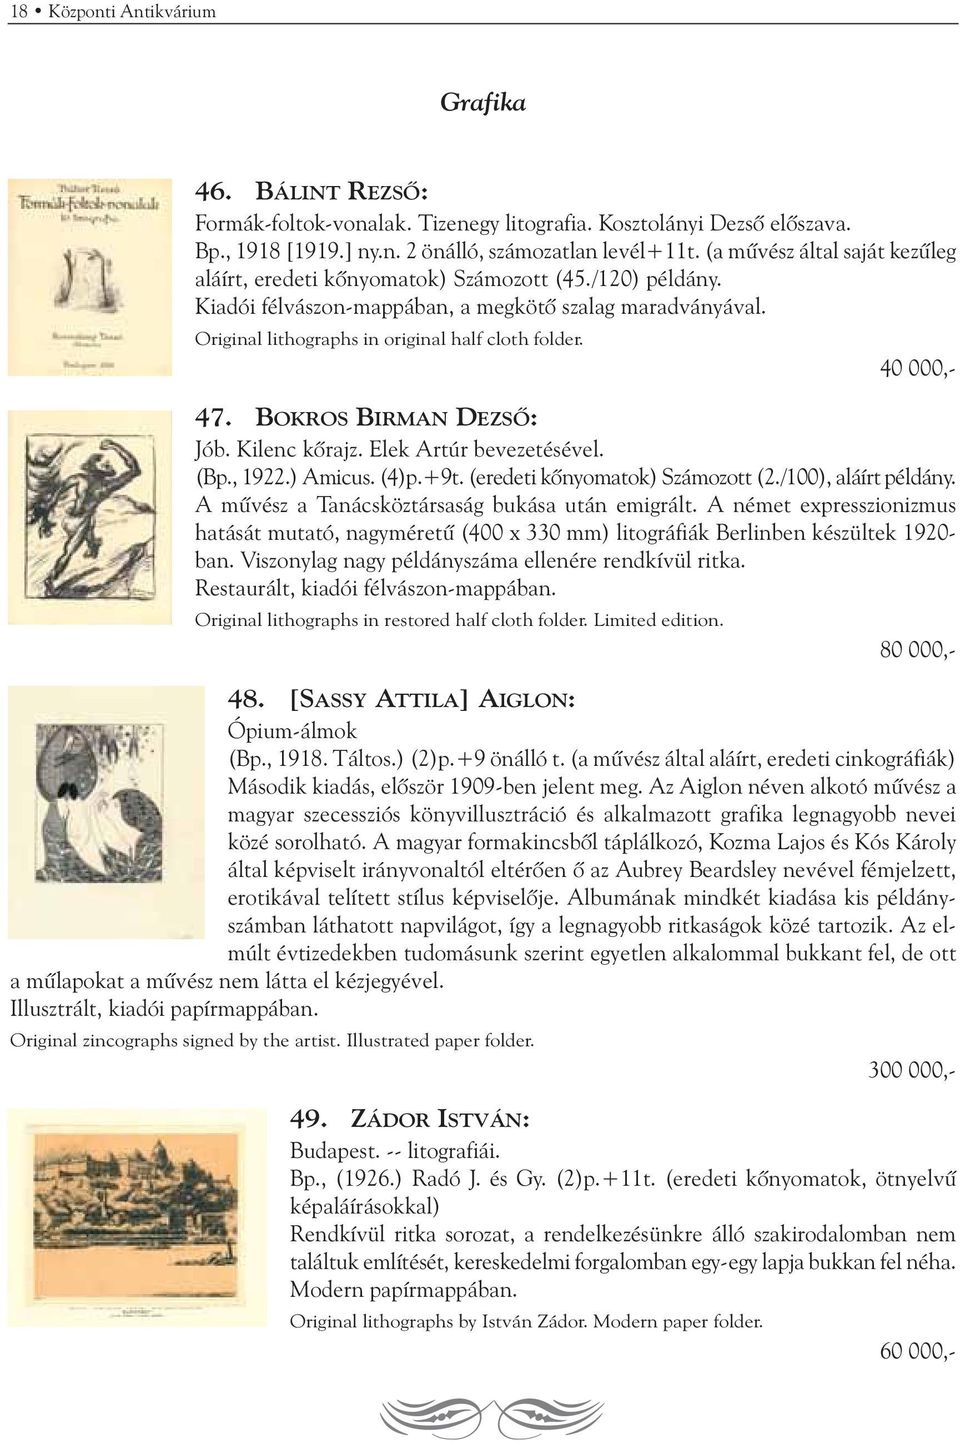 40 000,- 47. BOKROS BIRMAN DEZSÕ: Jób. Kilenc kõrajz. Elek Artúr bevezetésével. (Bp., 1922.) Amicus. (4)p.+9t. (eredeti kõnyomatok) Számozott (2./100), aláírt példány.